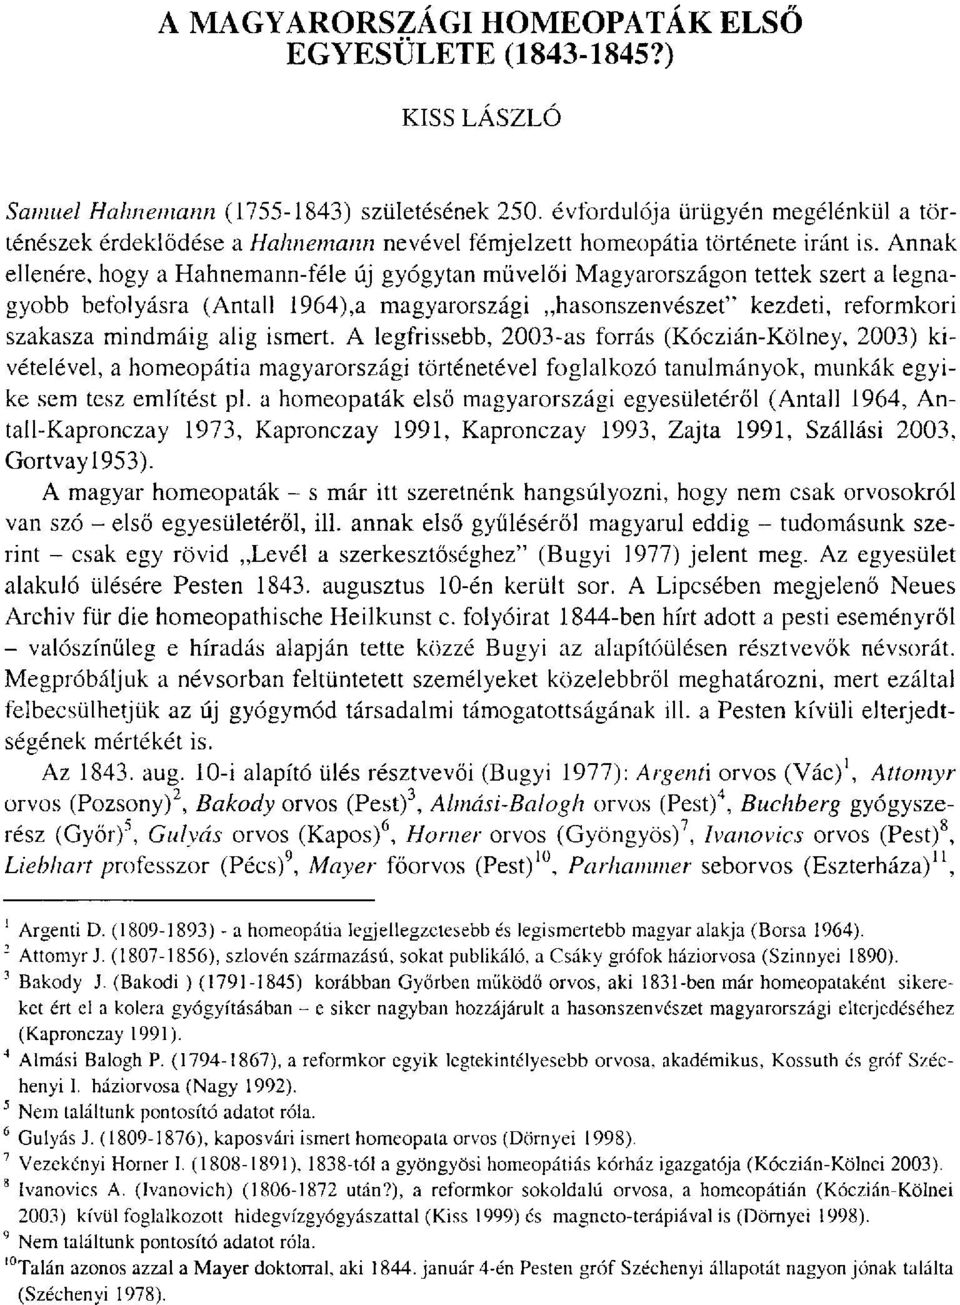 Annak ellenére, hogy a Hahnemann-féle új gyógytan művelői Magyarországon tettek szert a legnagyobb befolyásra (Antall 1964),a magyarországi hasonszenvészet" kezdeti, reformkori szakasza mindmáig alig